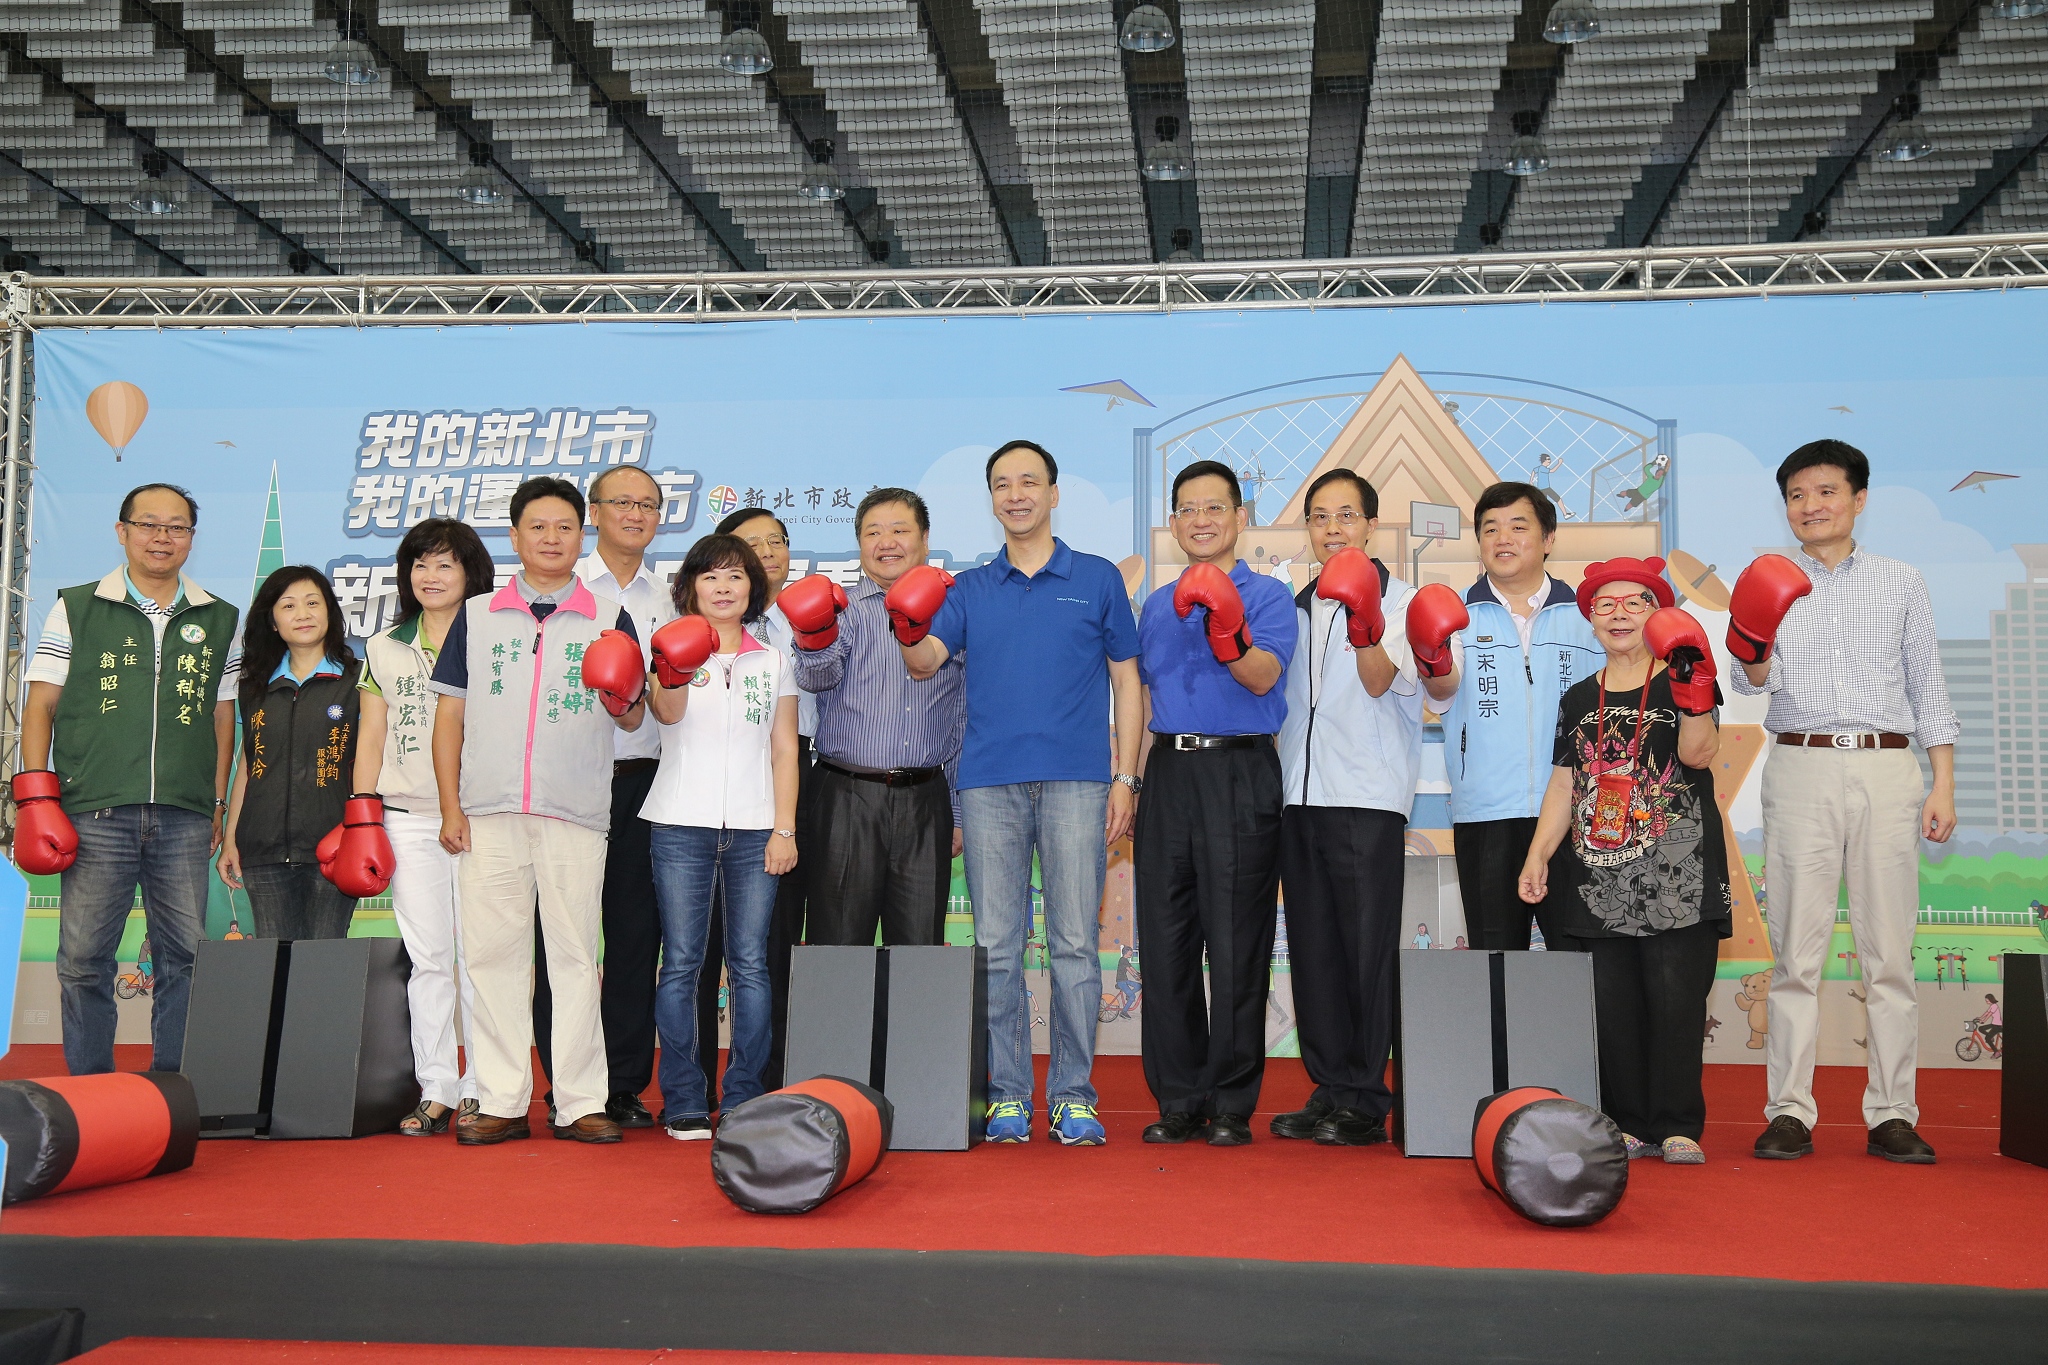 新五泰國民運動中心試營運 朱市長與市民一同搶先體驗
